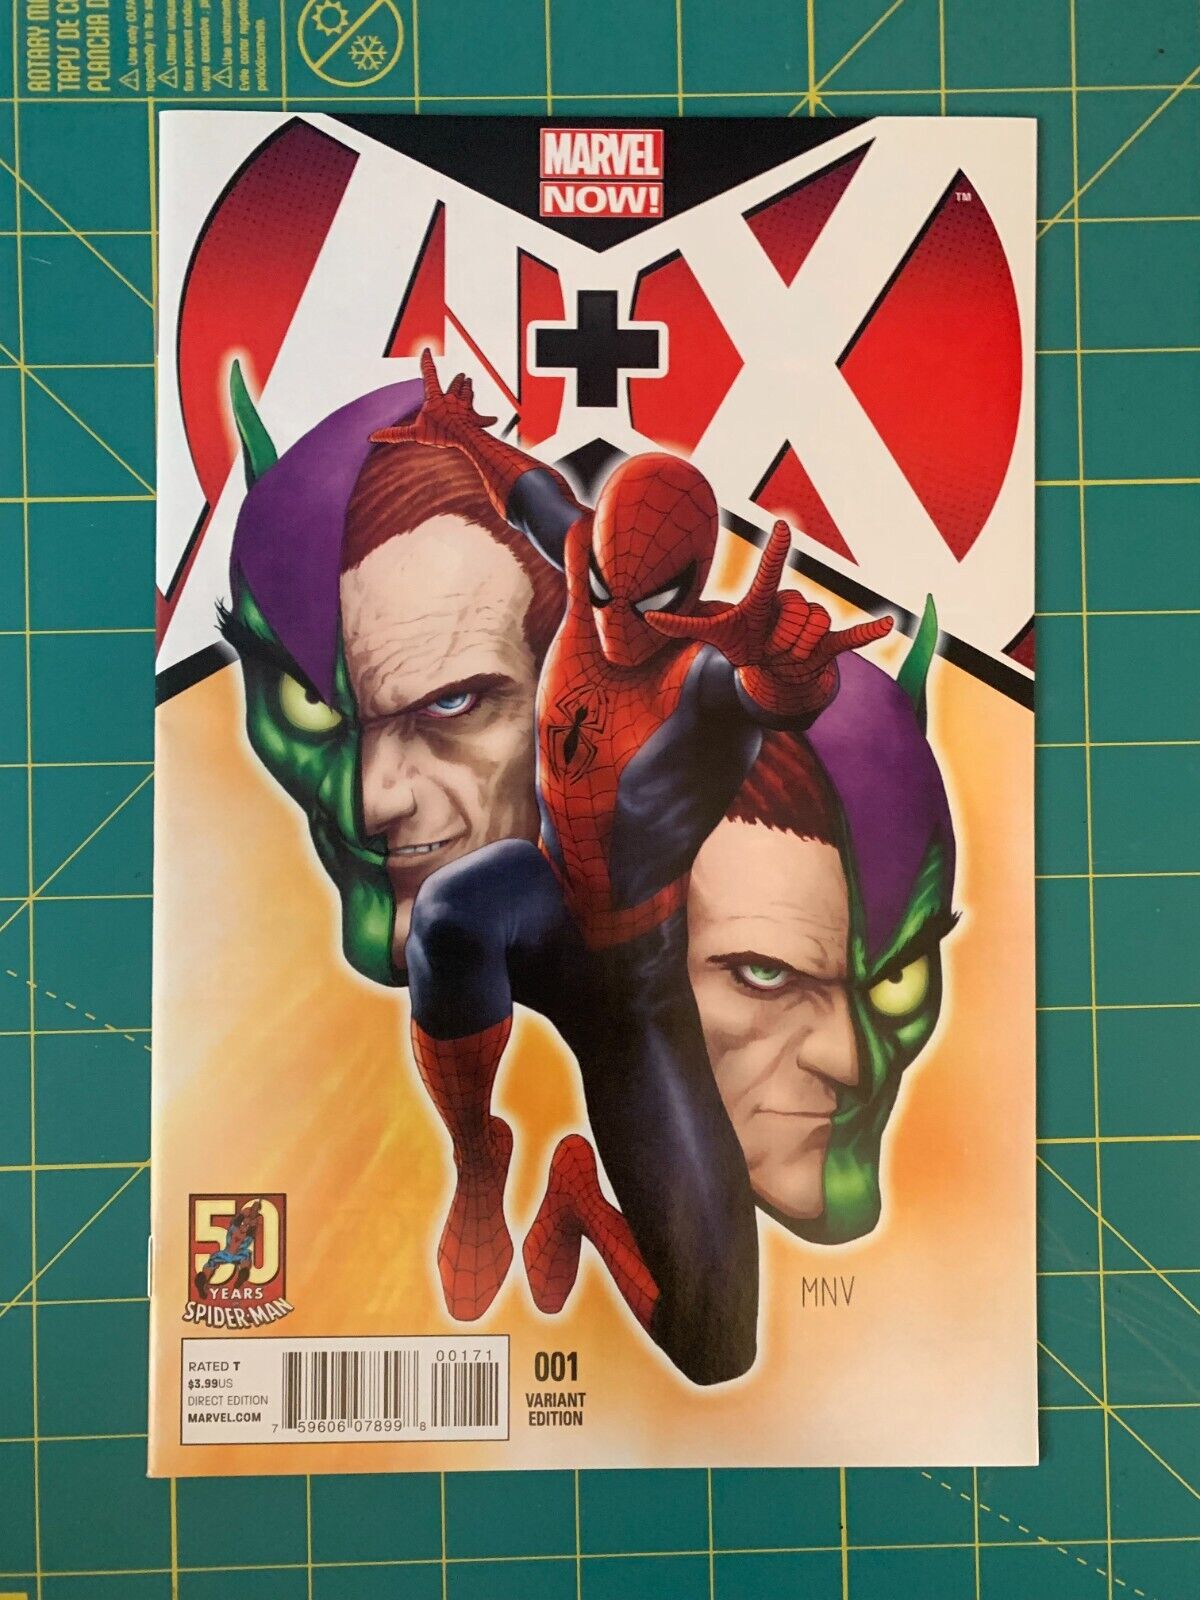 A Plus X #1 - Dec 2012 - A+X - Steve McNiven Spider-Man Variant (8537)